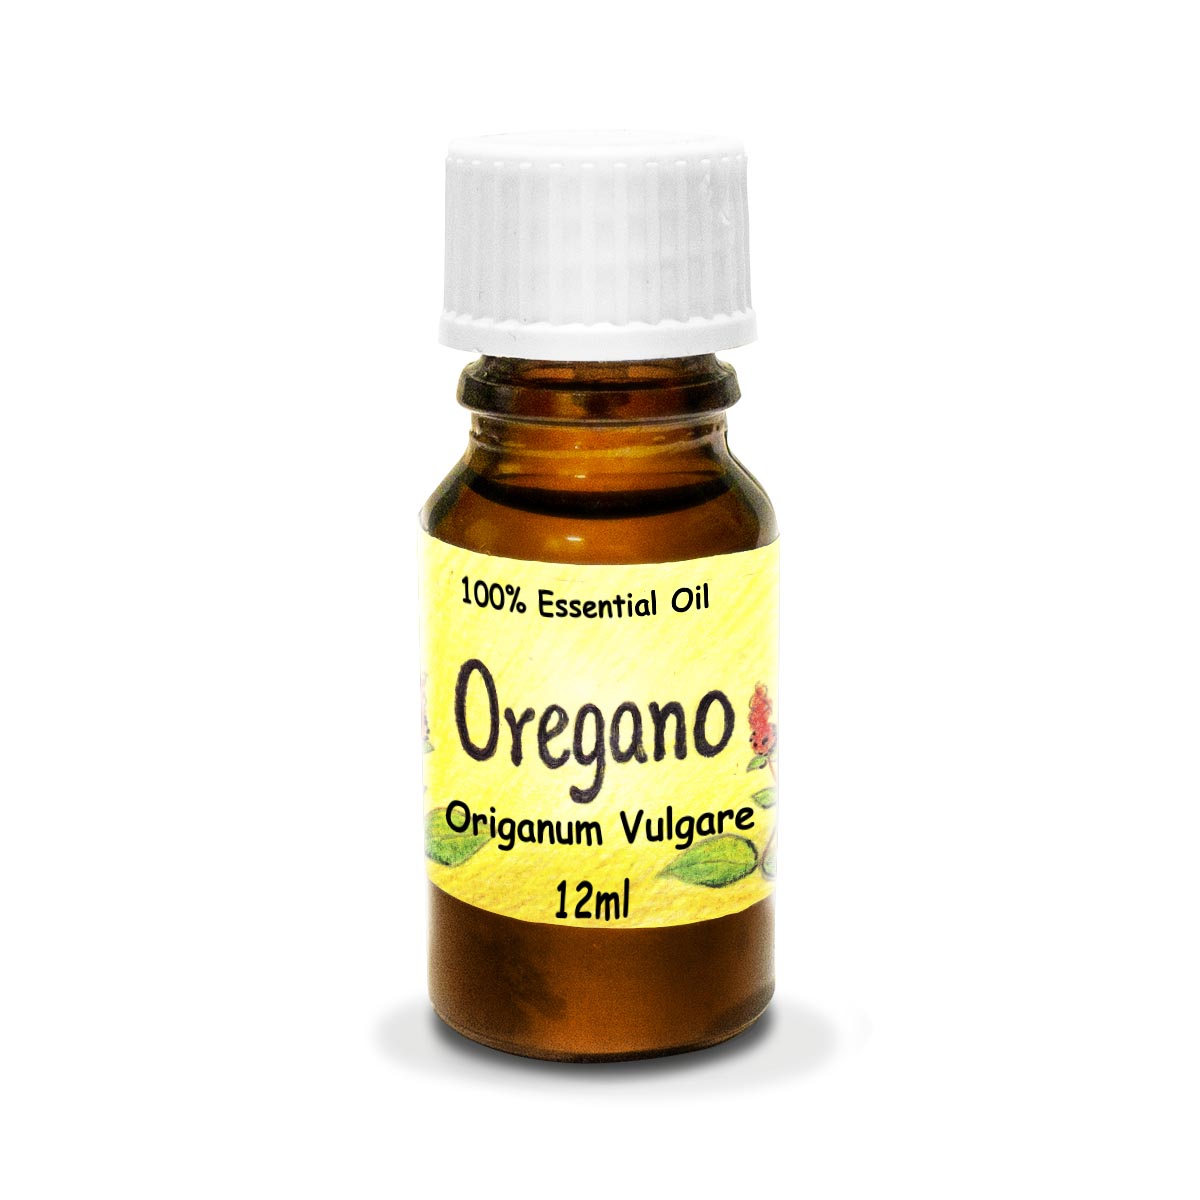 Oregano - Essential Oil